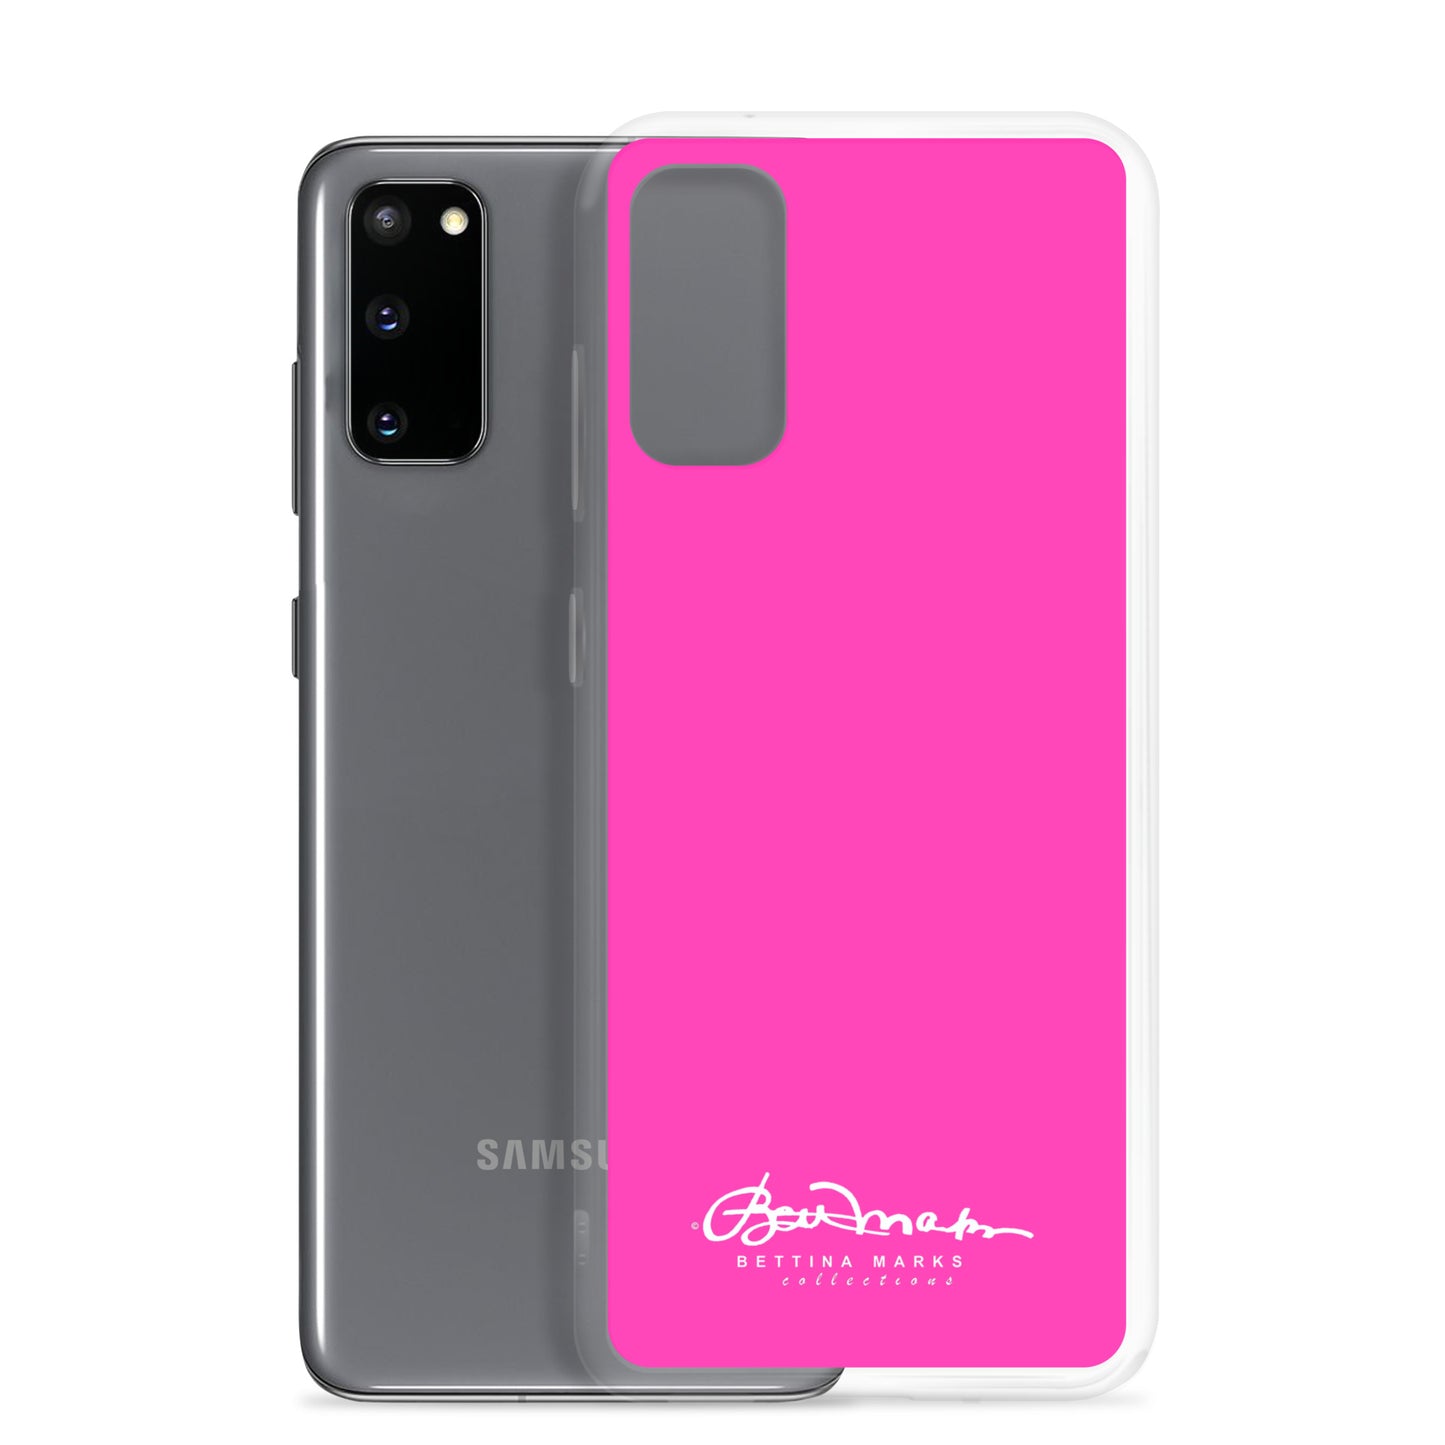 Barbie Samsung Case (select model)